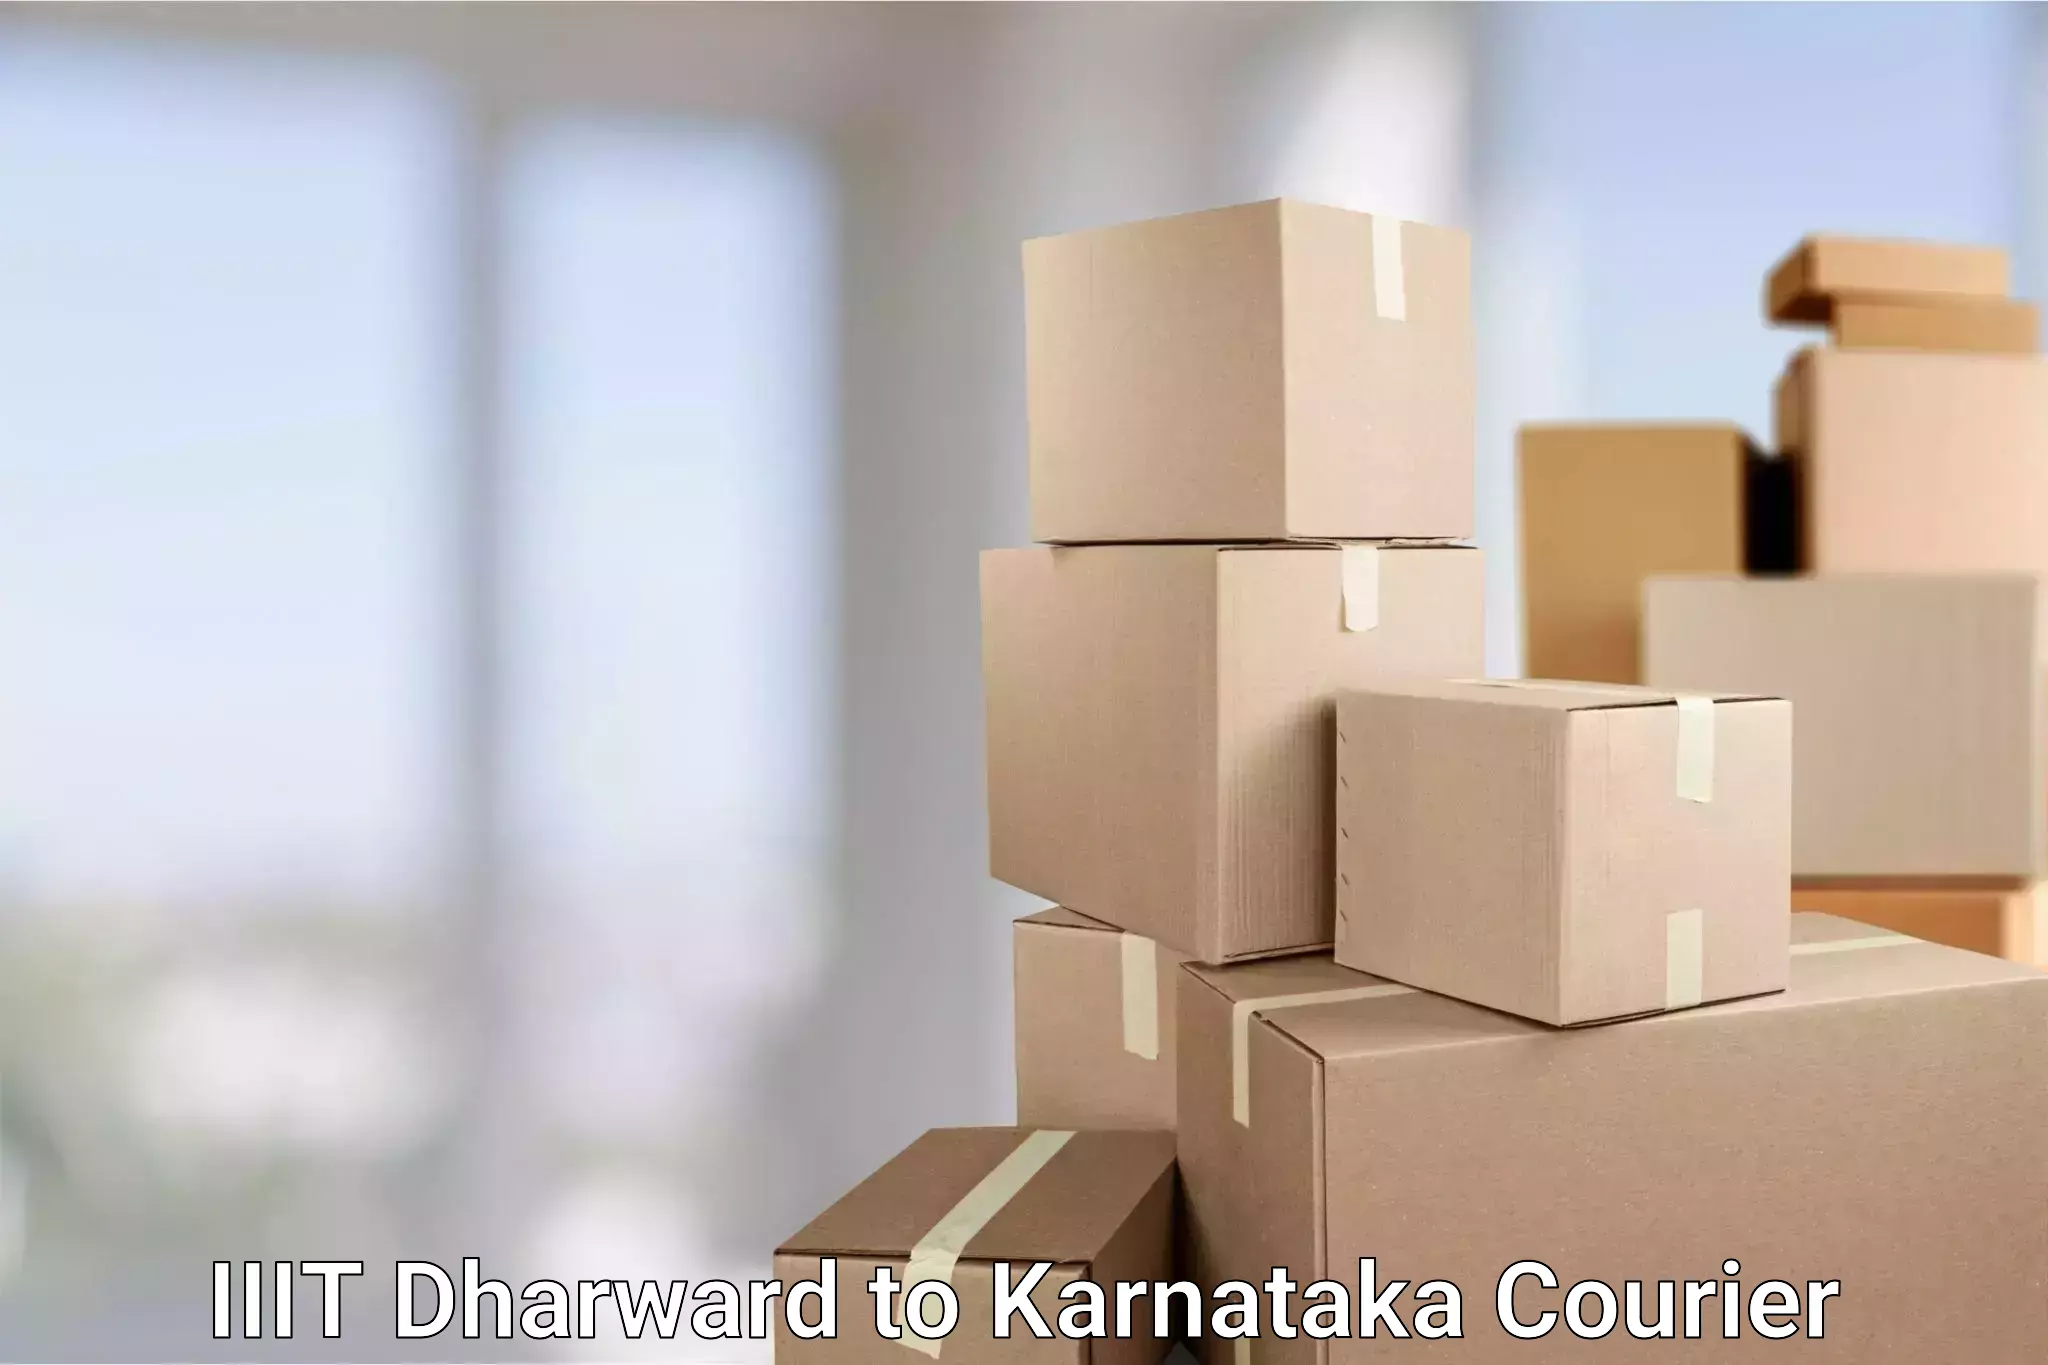 Efficient parcel service IIIT Dharward to Karnataka